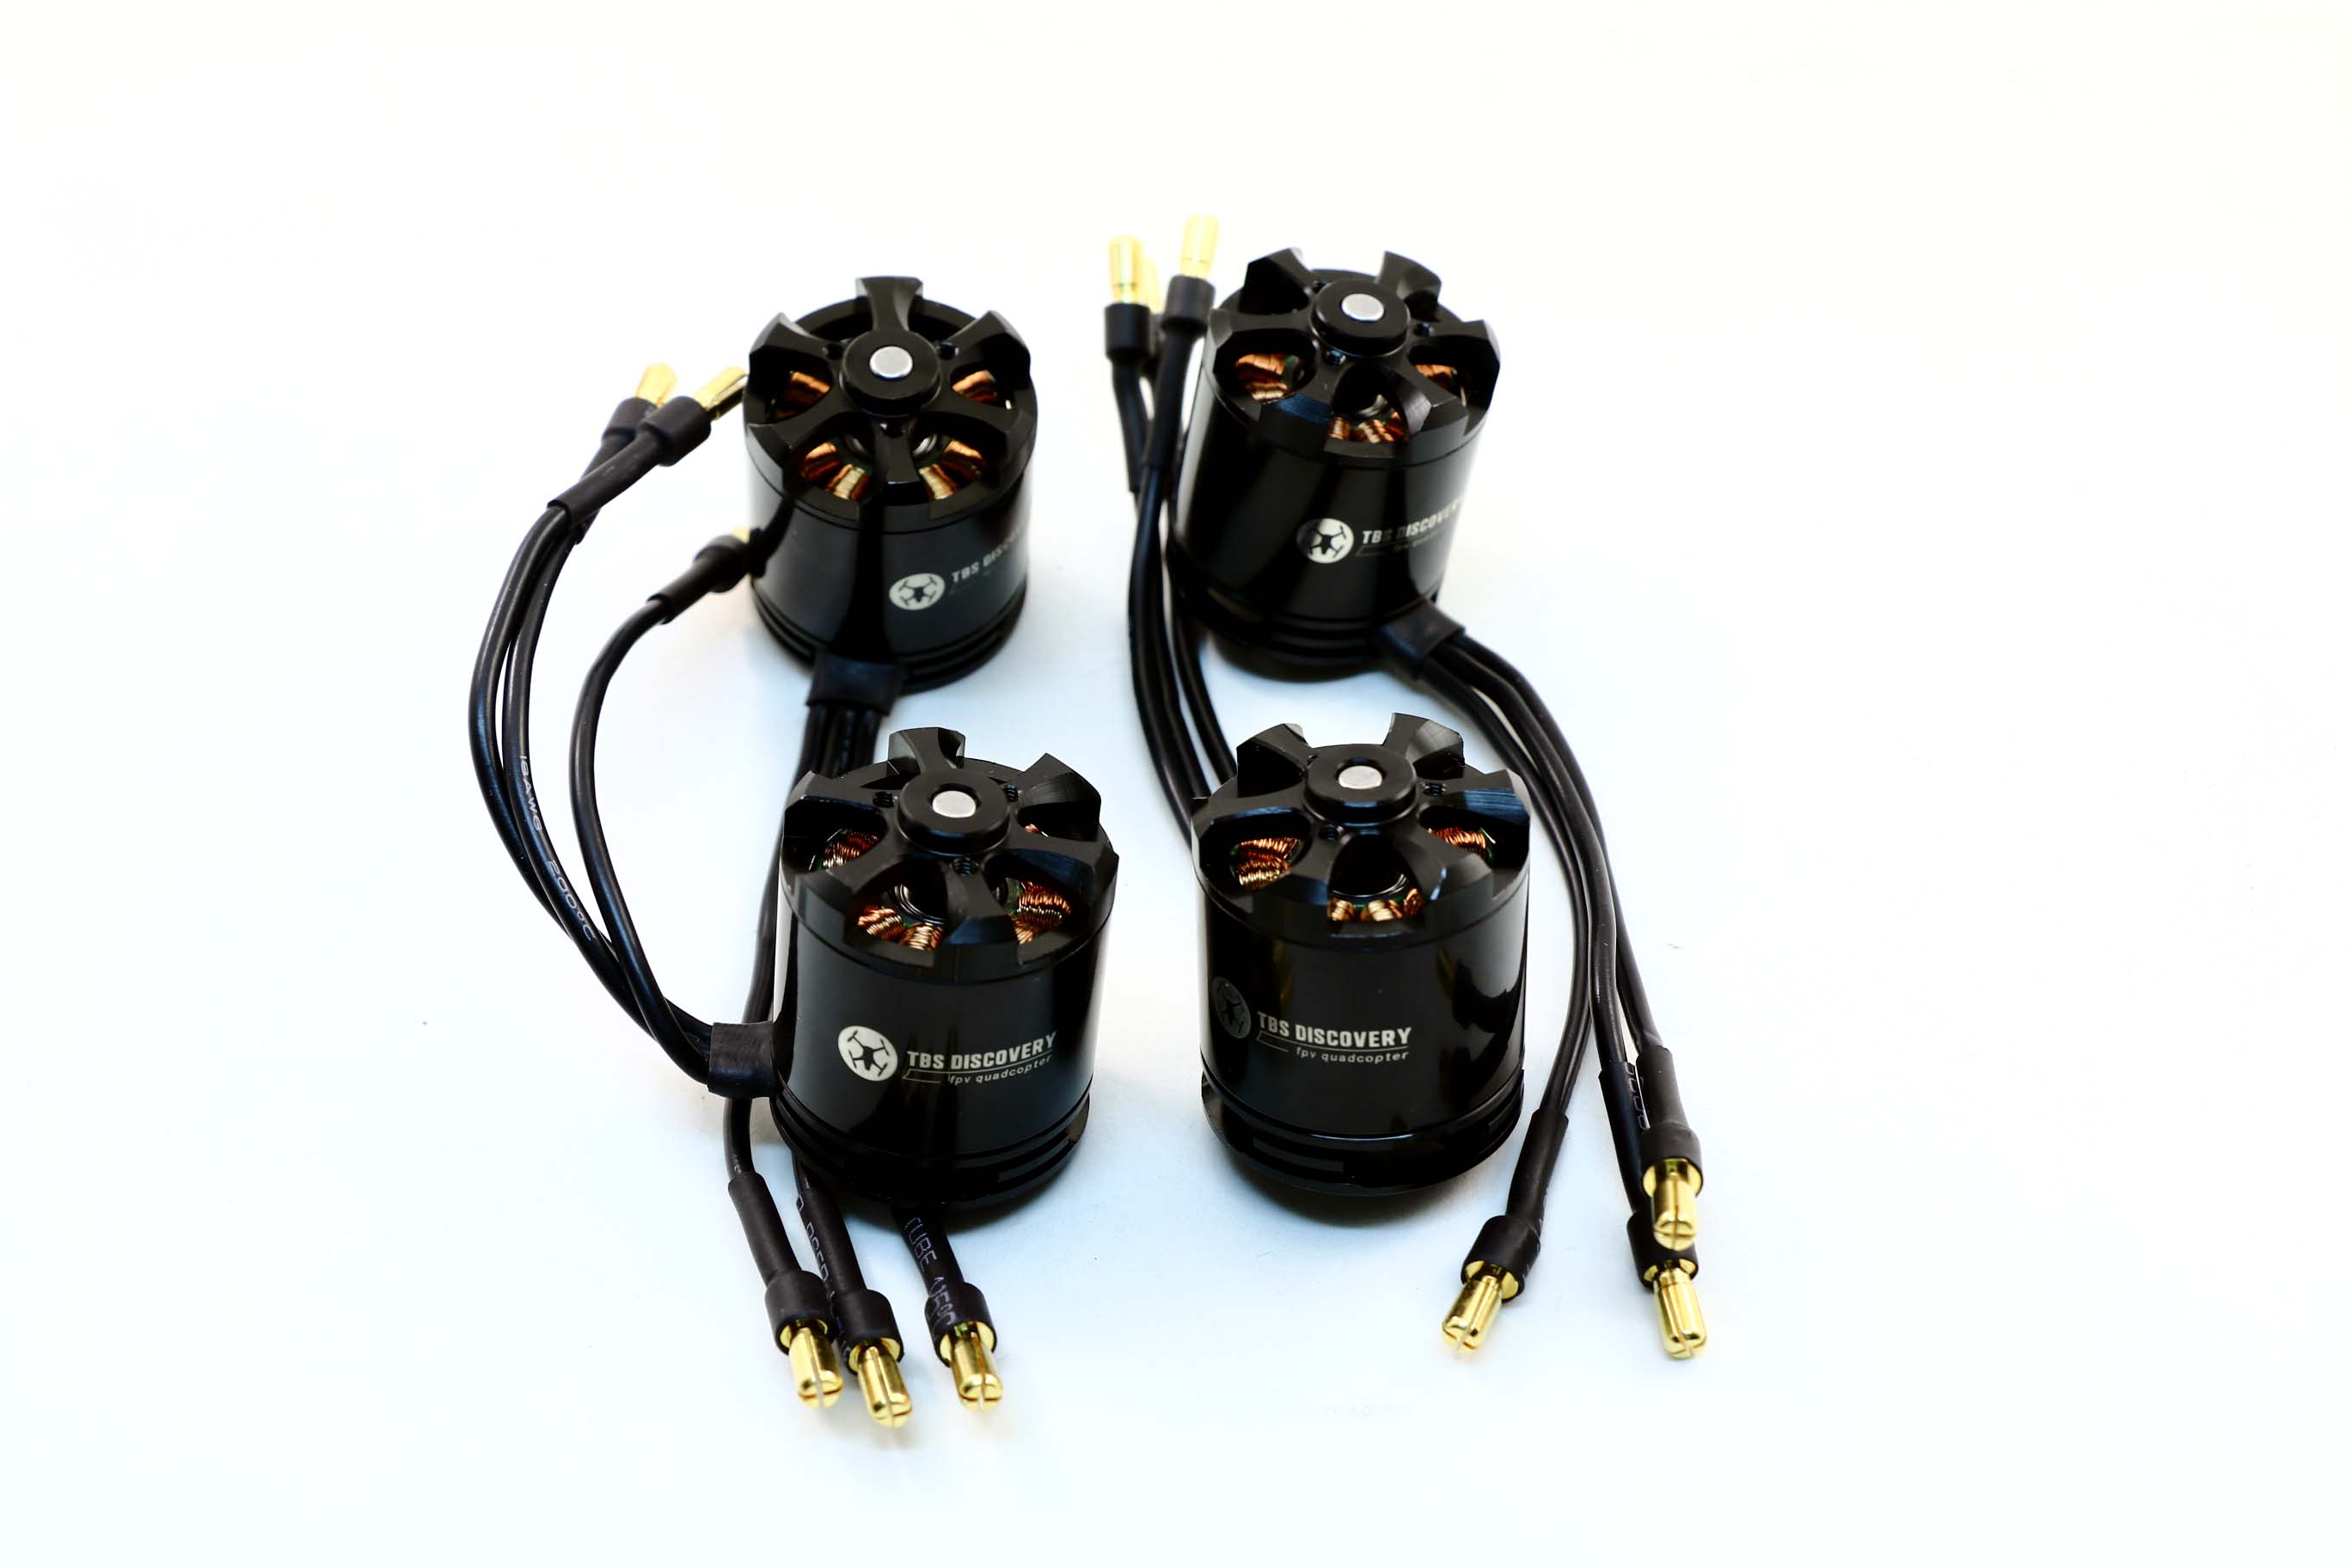 Team BlackSheep 900KV motors from bulletproof TBS motor & ESC set